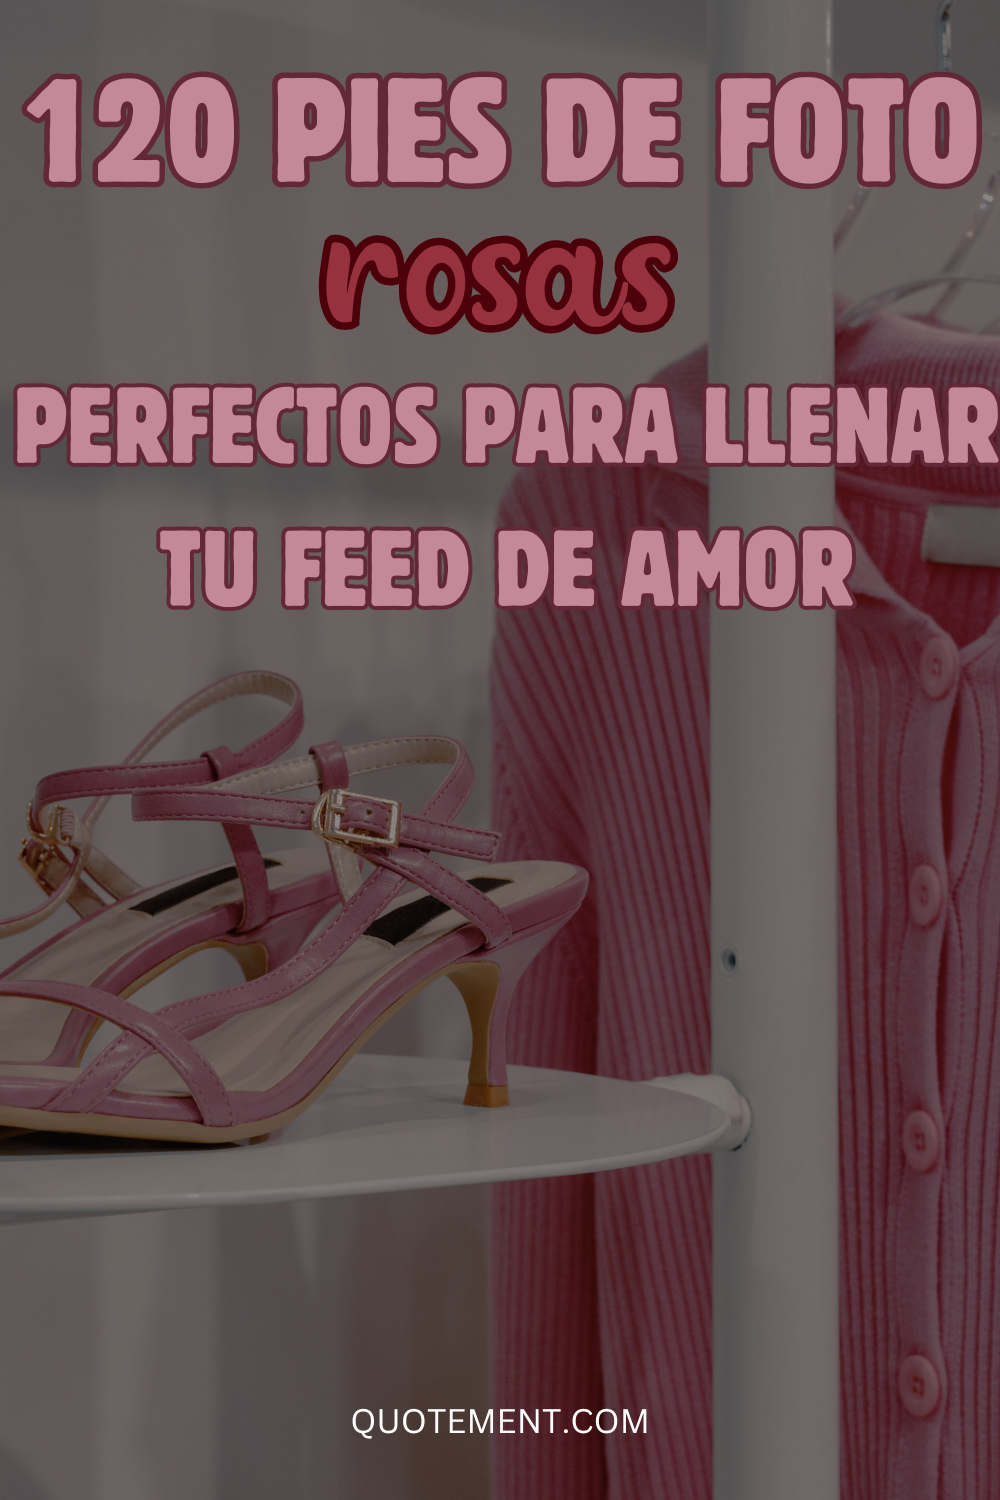 120 pies de foto rosas perfectos para llenar tu feed de amor 